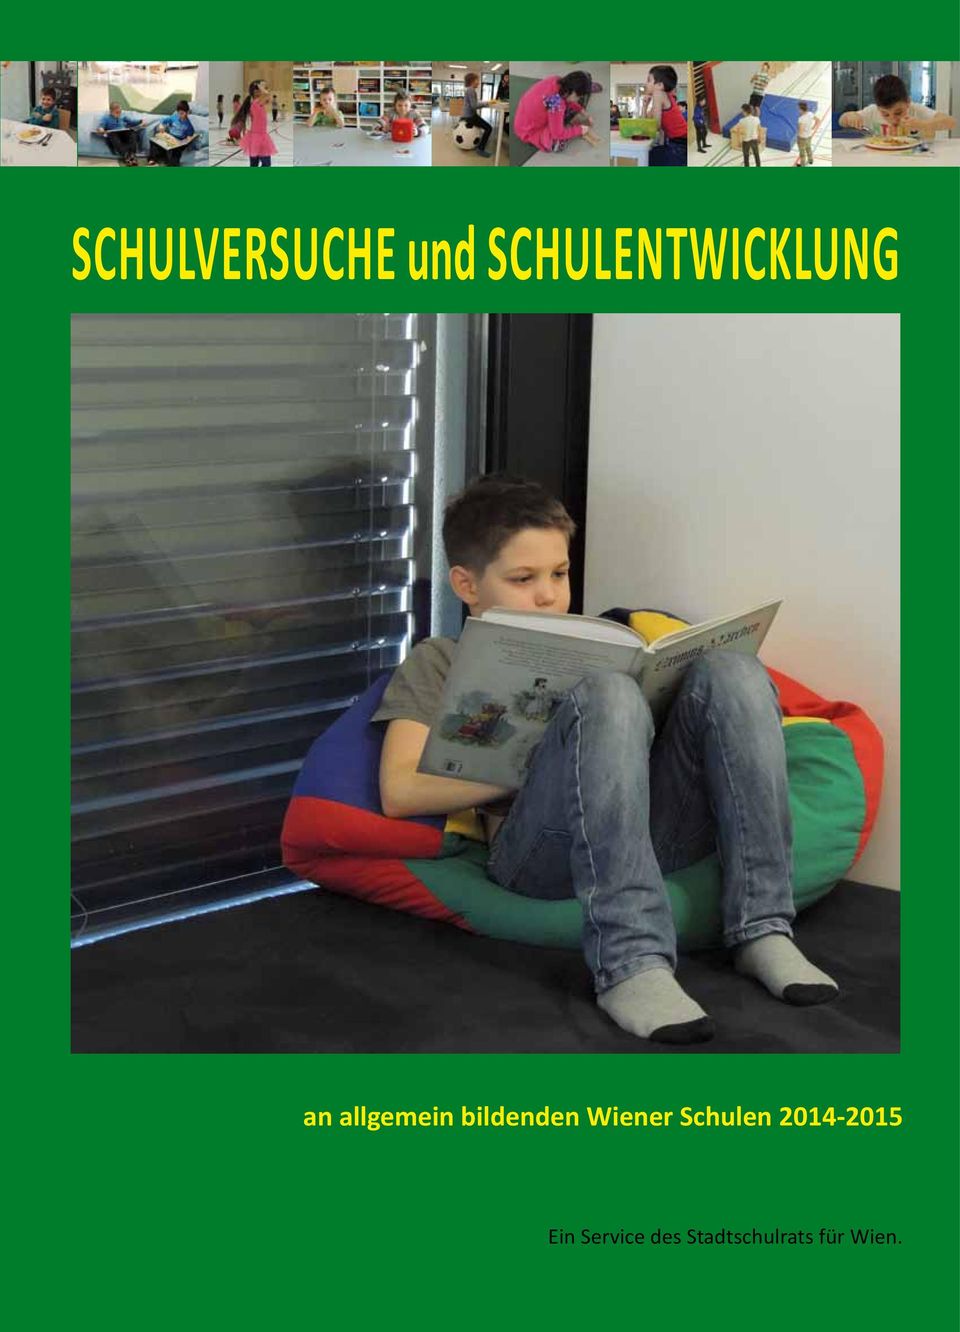 bildenden Wiener Schulen